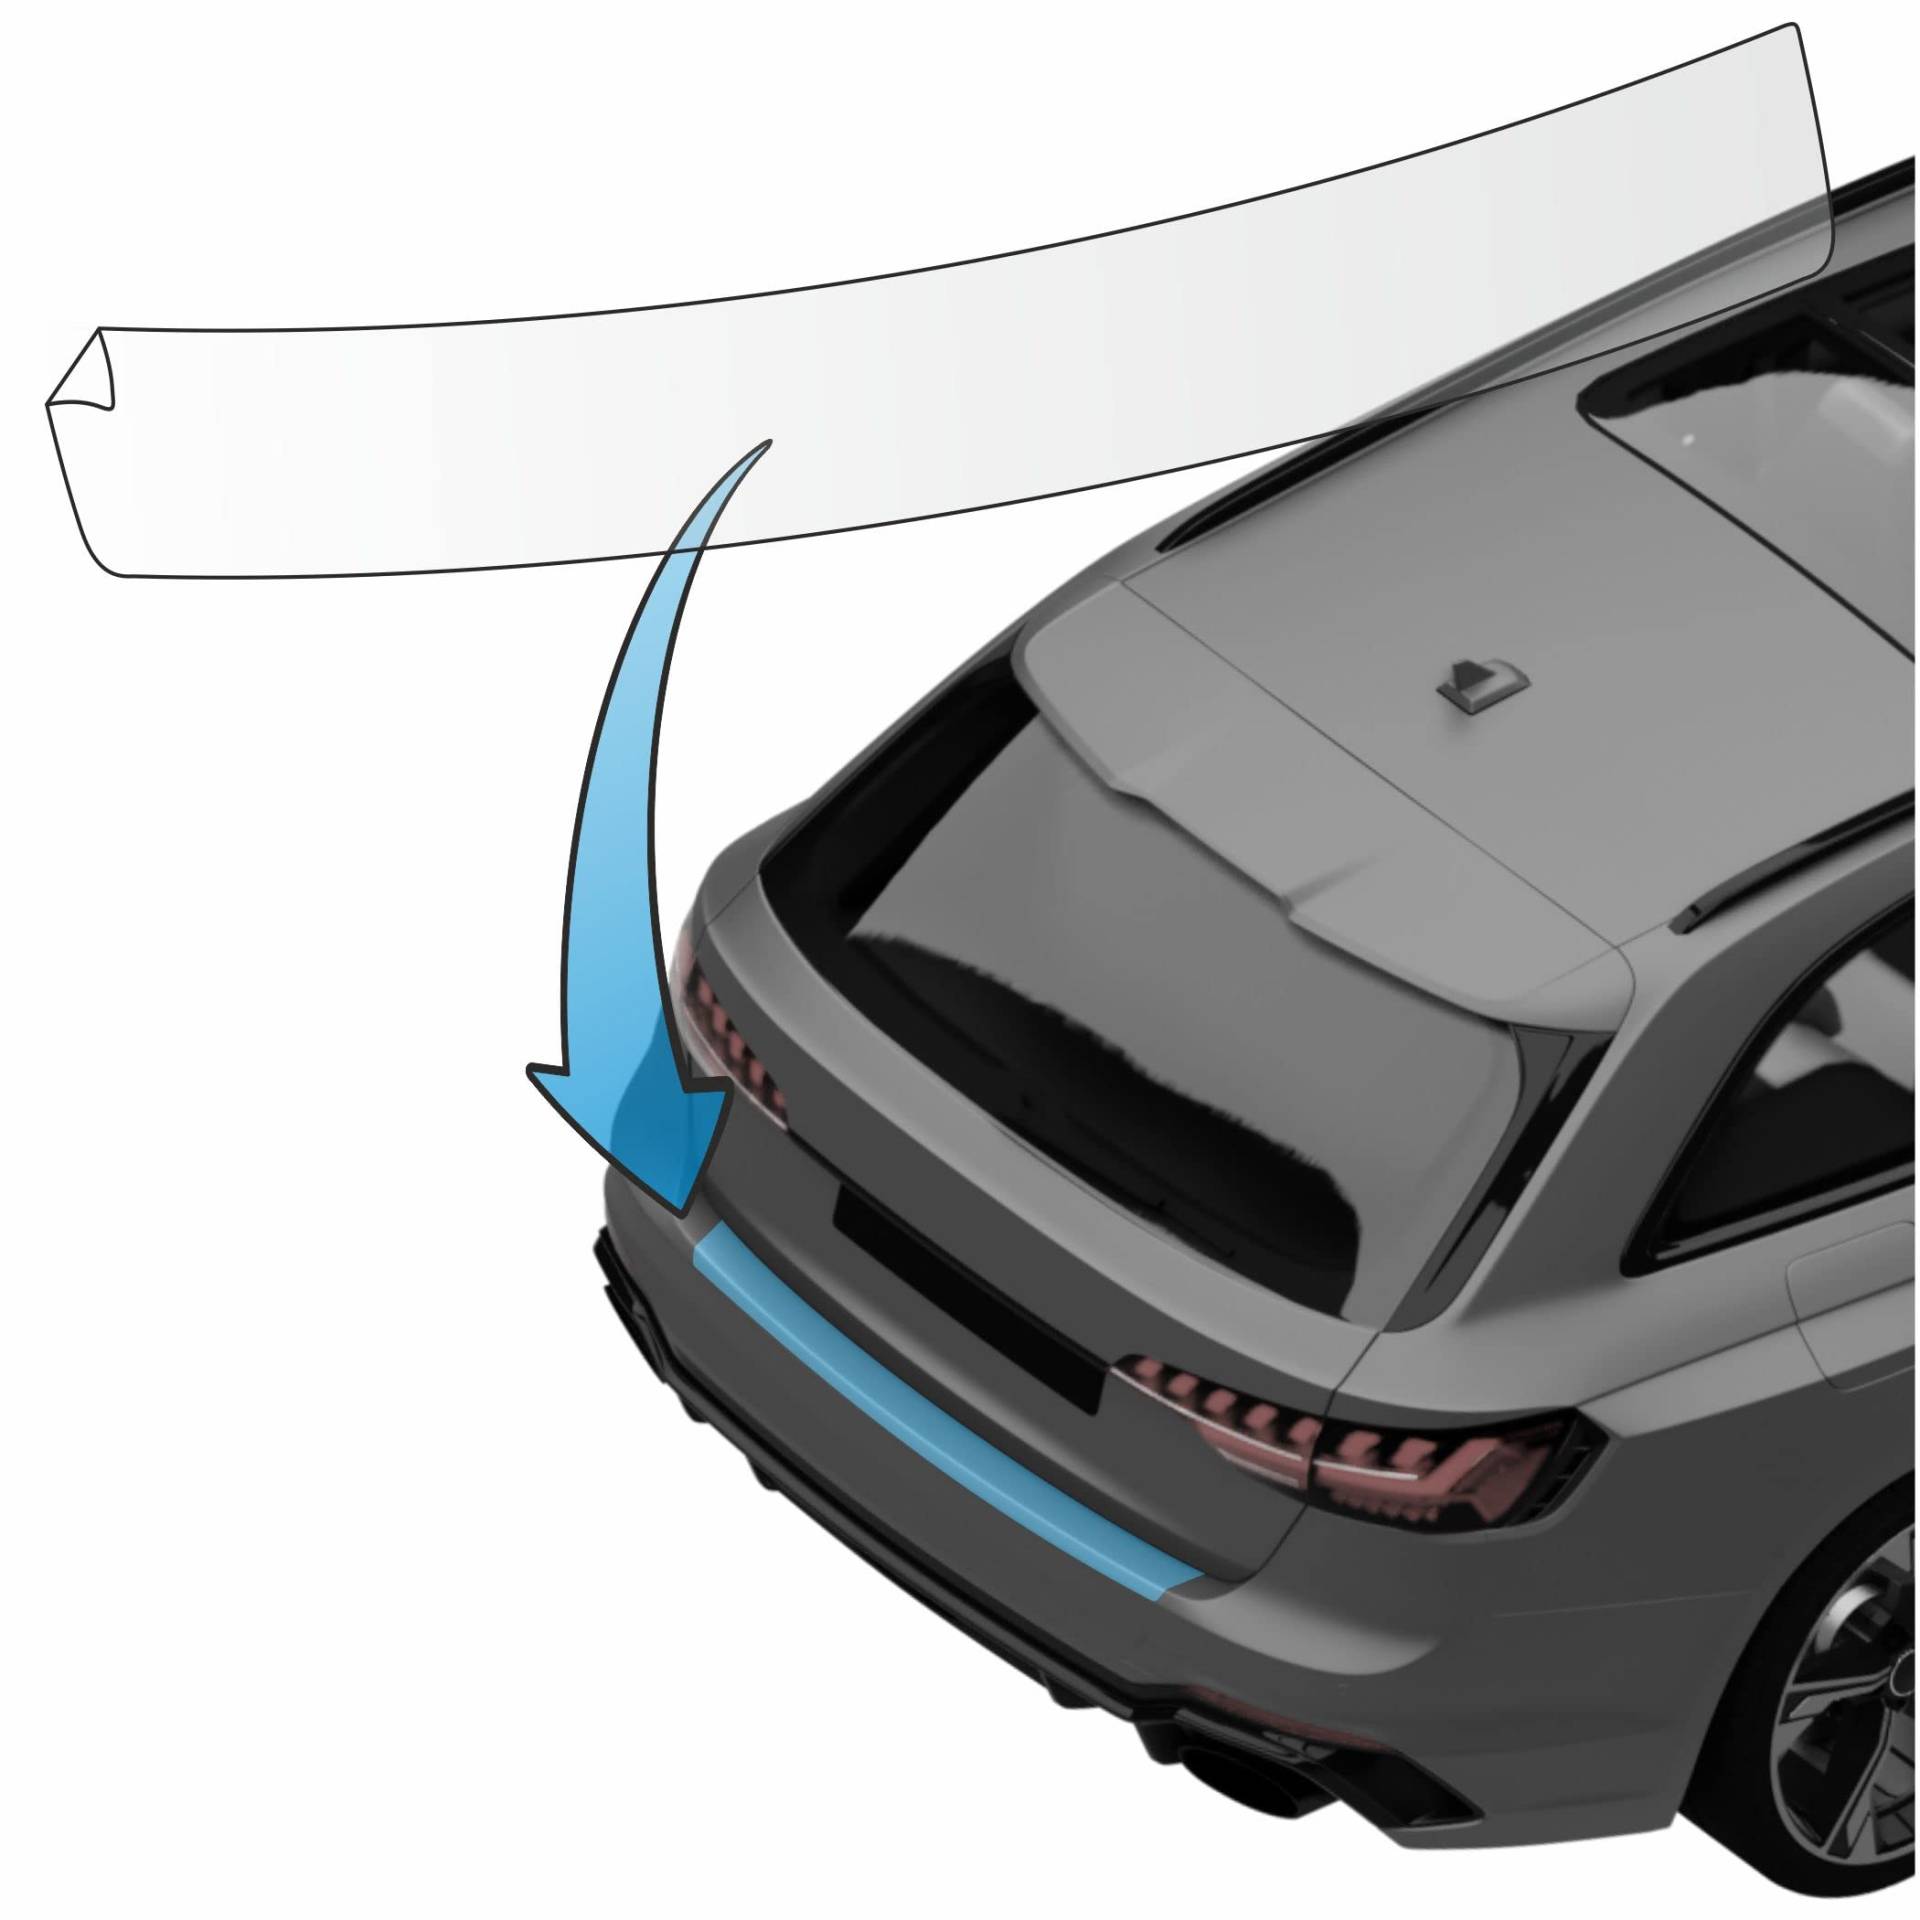 MisterLacky – Lackschutzfolie mit Rakel als Ladekantenschutz Folie passend für Volvo C30 Typ M, BJ 2007-2012 in transparent (240µm) von Lackschutzshop